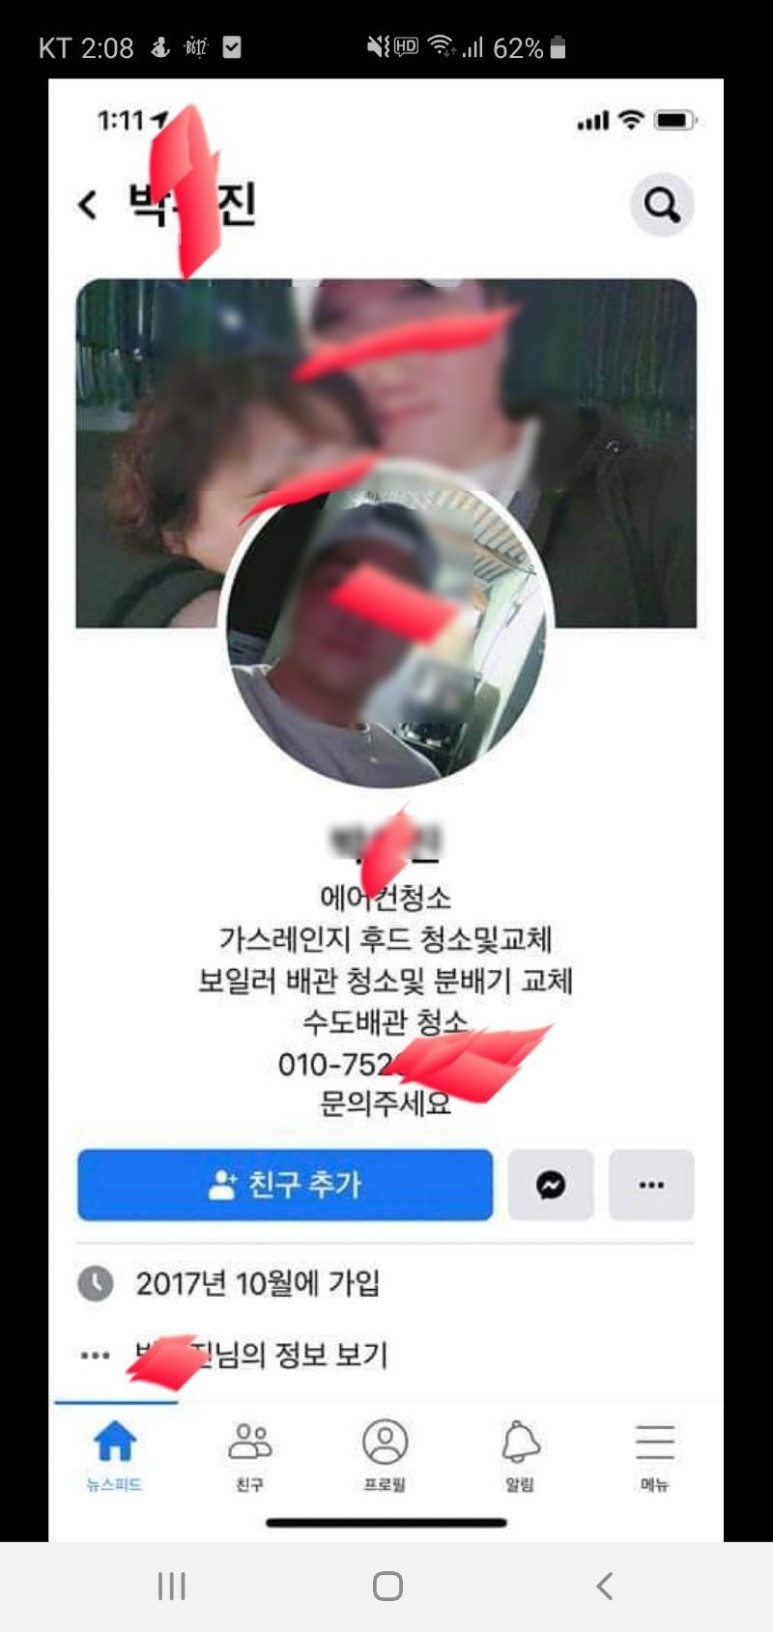 신상 택시 기사 박 폭행 신상털기까지…‘택시기사 폭행’